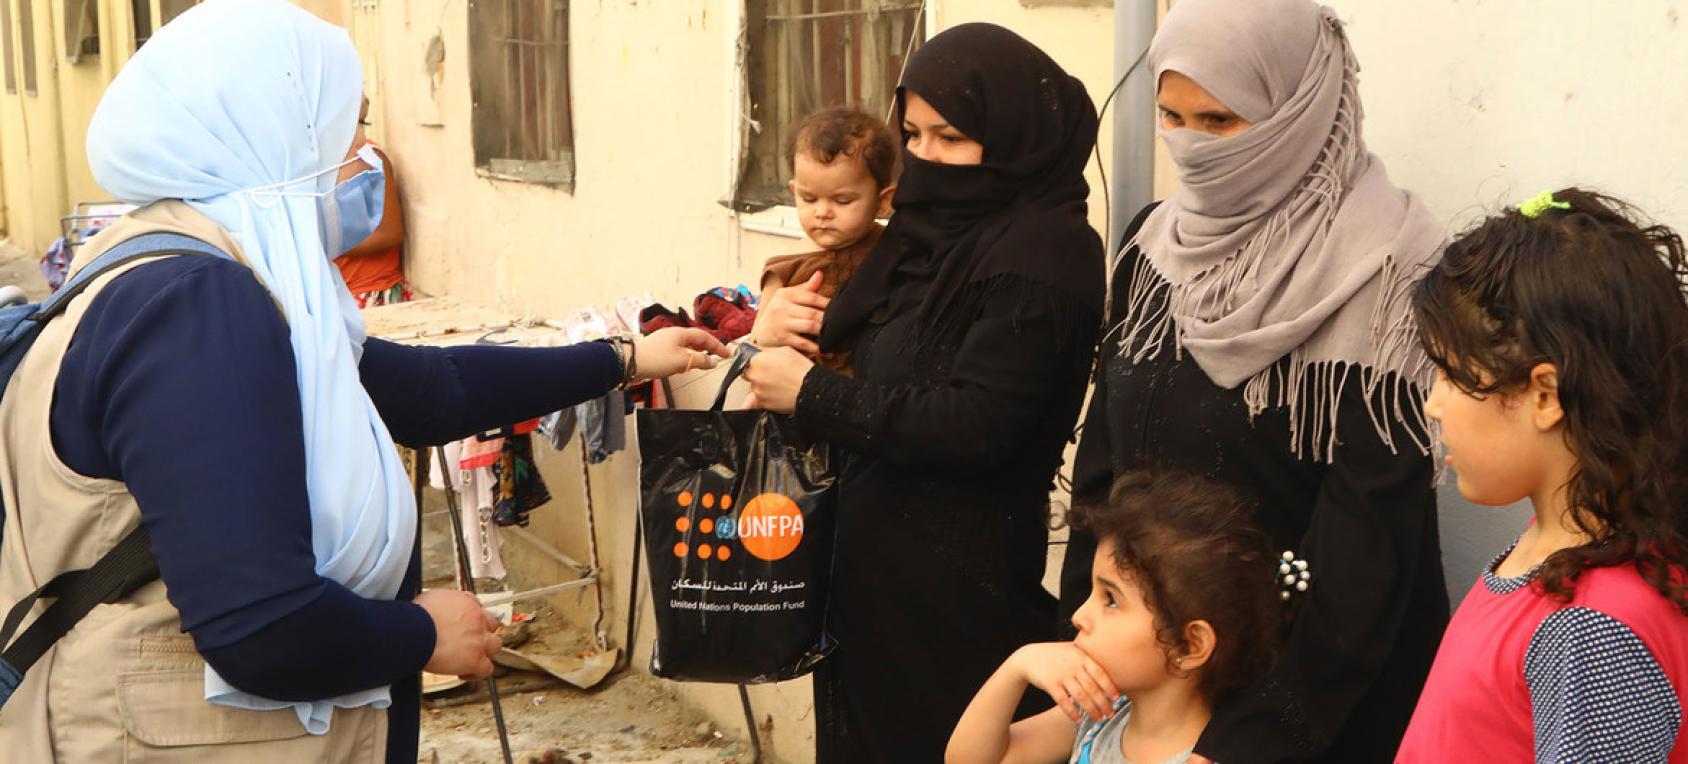 Un membre féminin du personnel de l'ONU portant un masque de protection remet un kit dignité du FNUAP dans un sac en plastique noir à une habitante de Beyrouth vêtue d'une burka et tenant un jeune enfant dans les bras. Une autre habitante se tient avec deux fillettes près de la femme en burka.